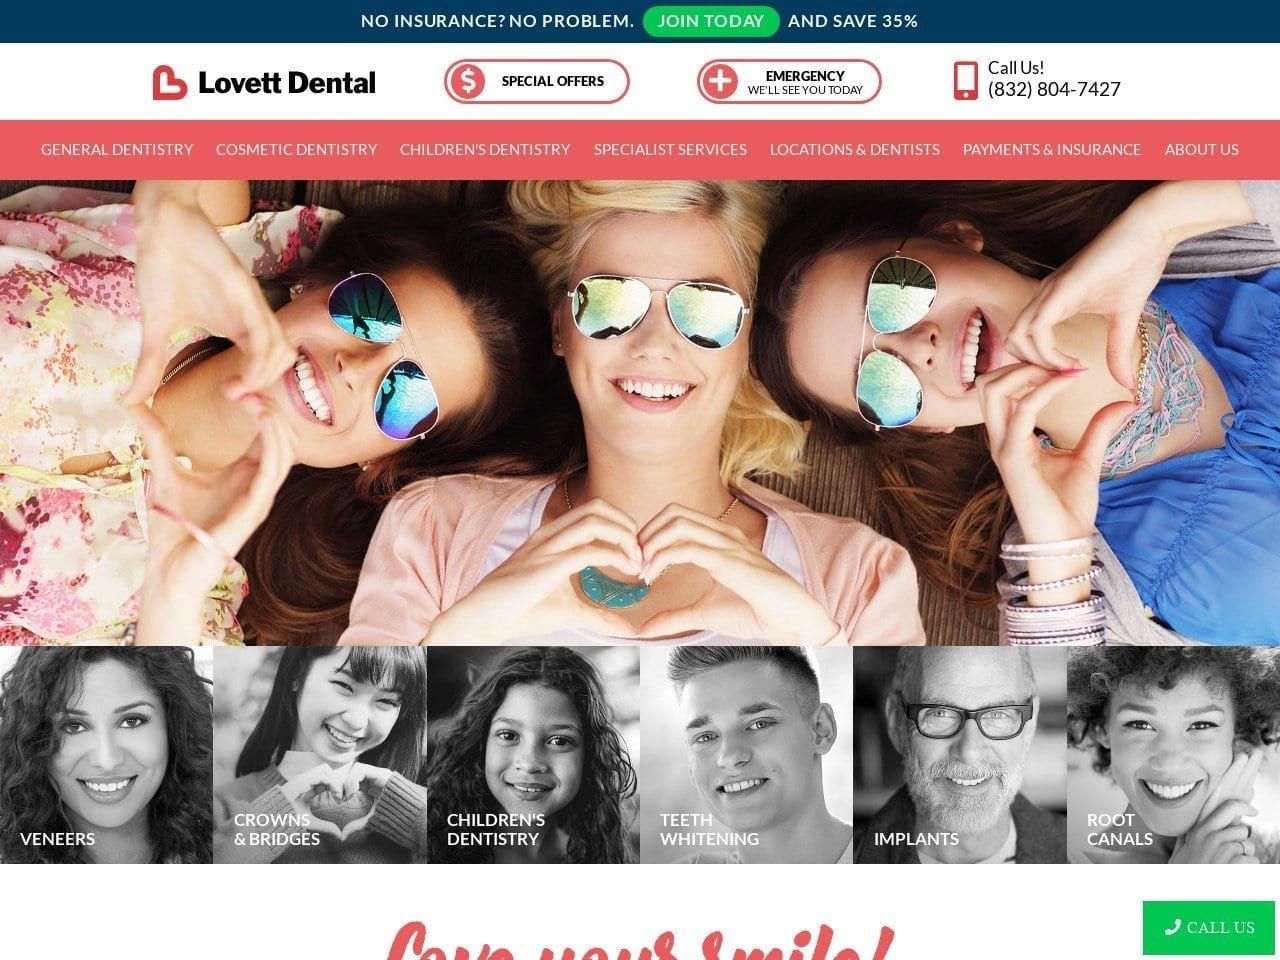 Lovett Dental Website Screenshot from lovettdental.com